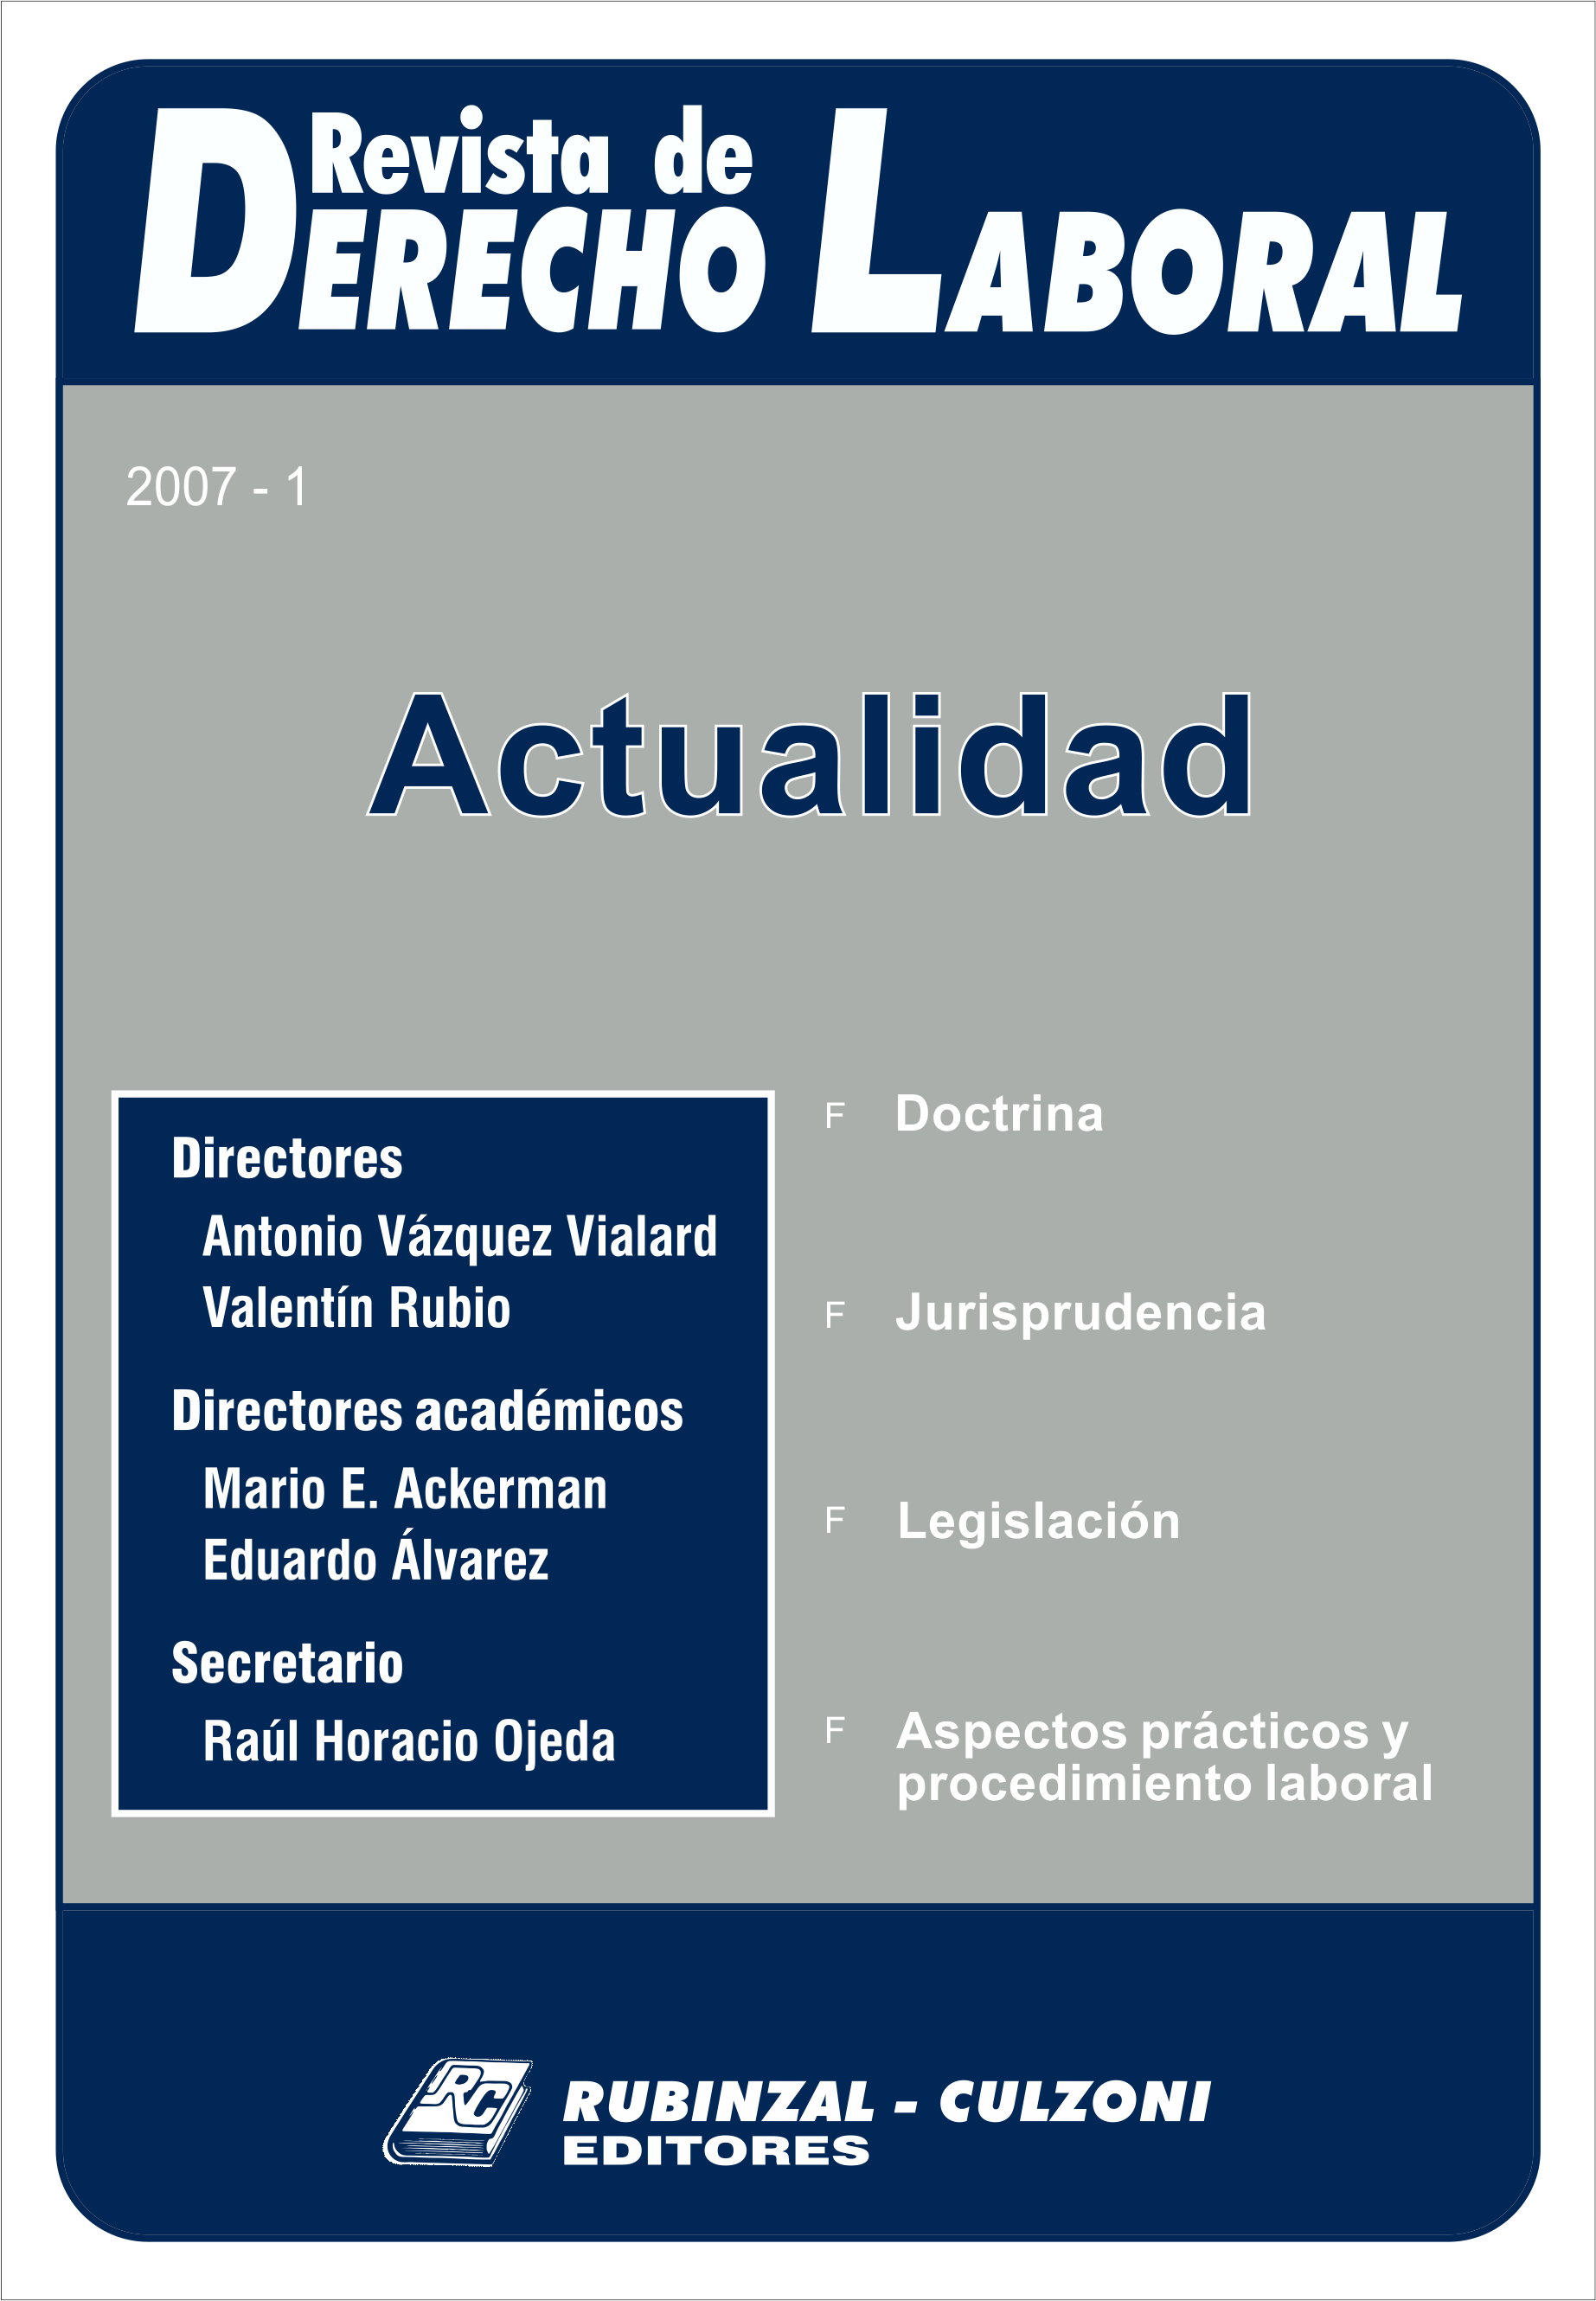 Revista de Derecho Laboral Actualidad - Año 2007 - 1.